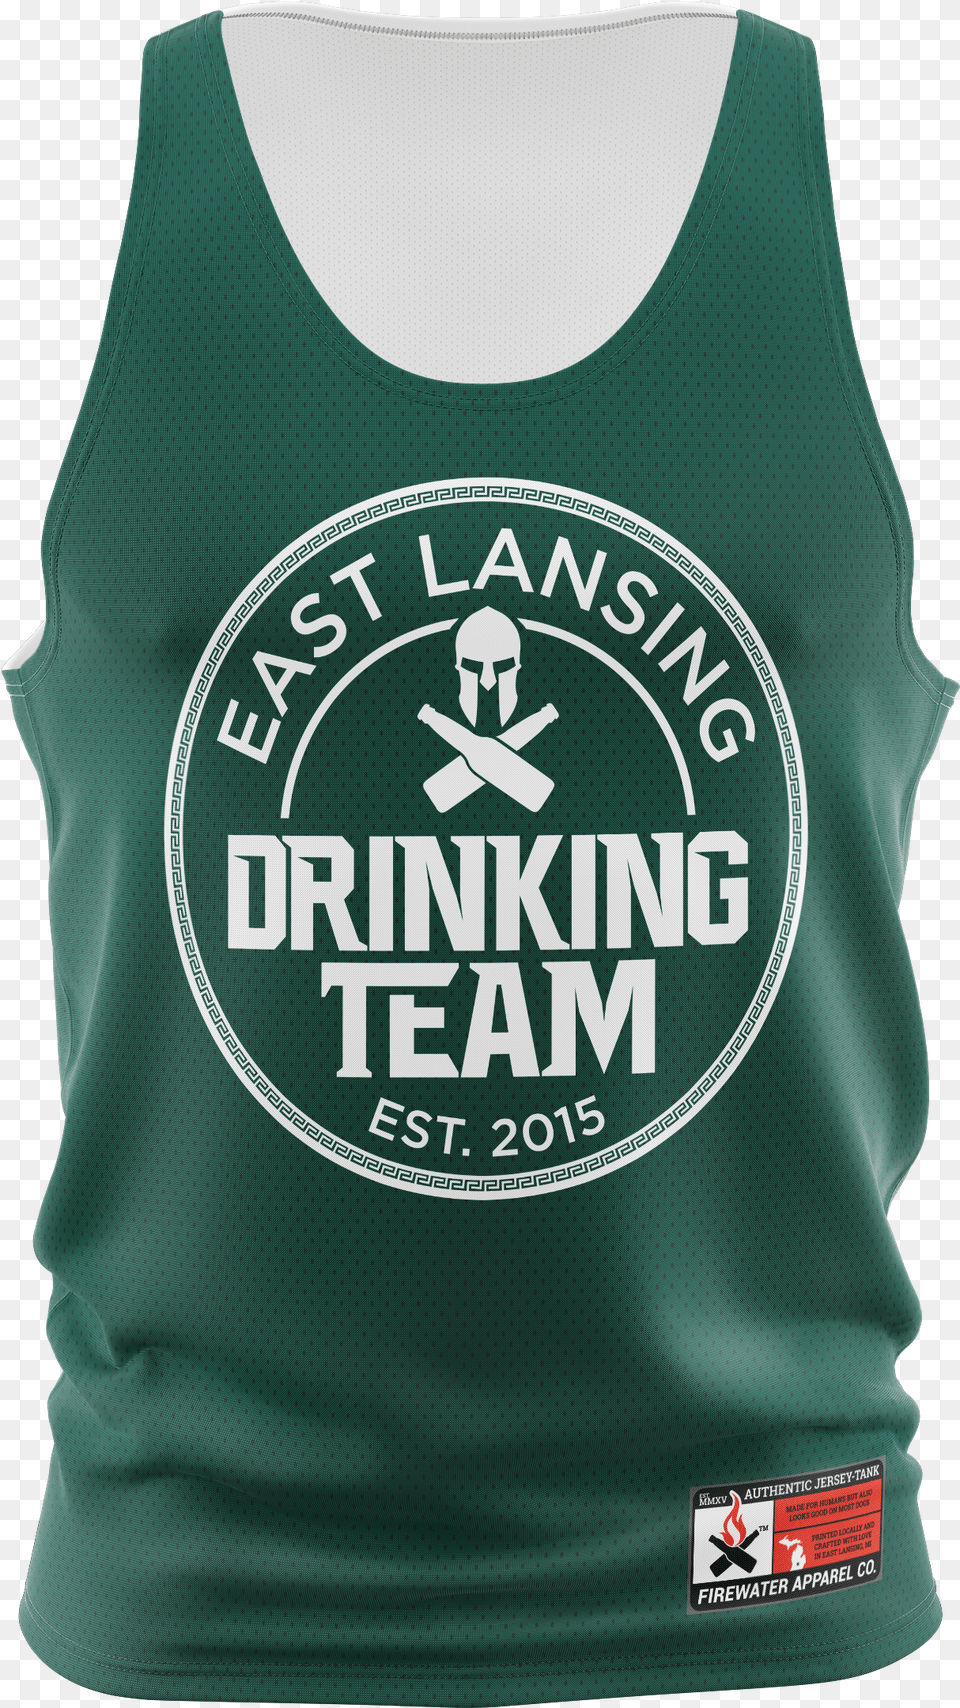 East Lansing Jersey Tank, Clothing, Shirt, Tank Top Free Png